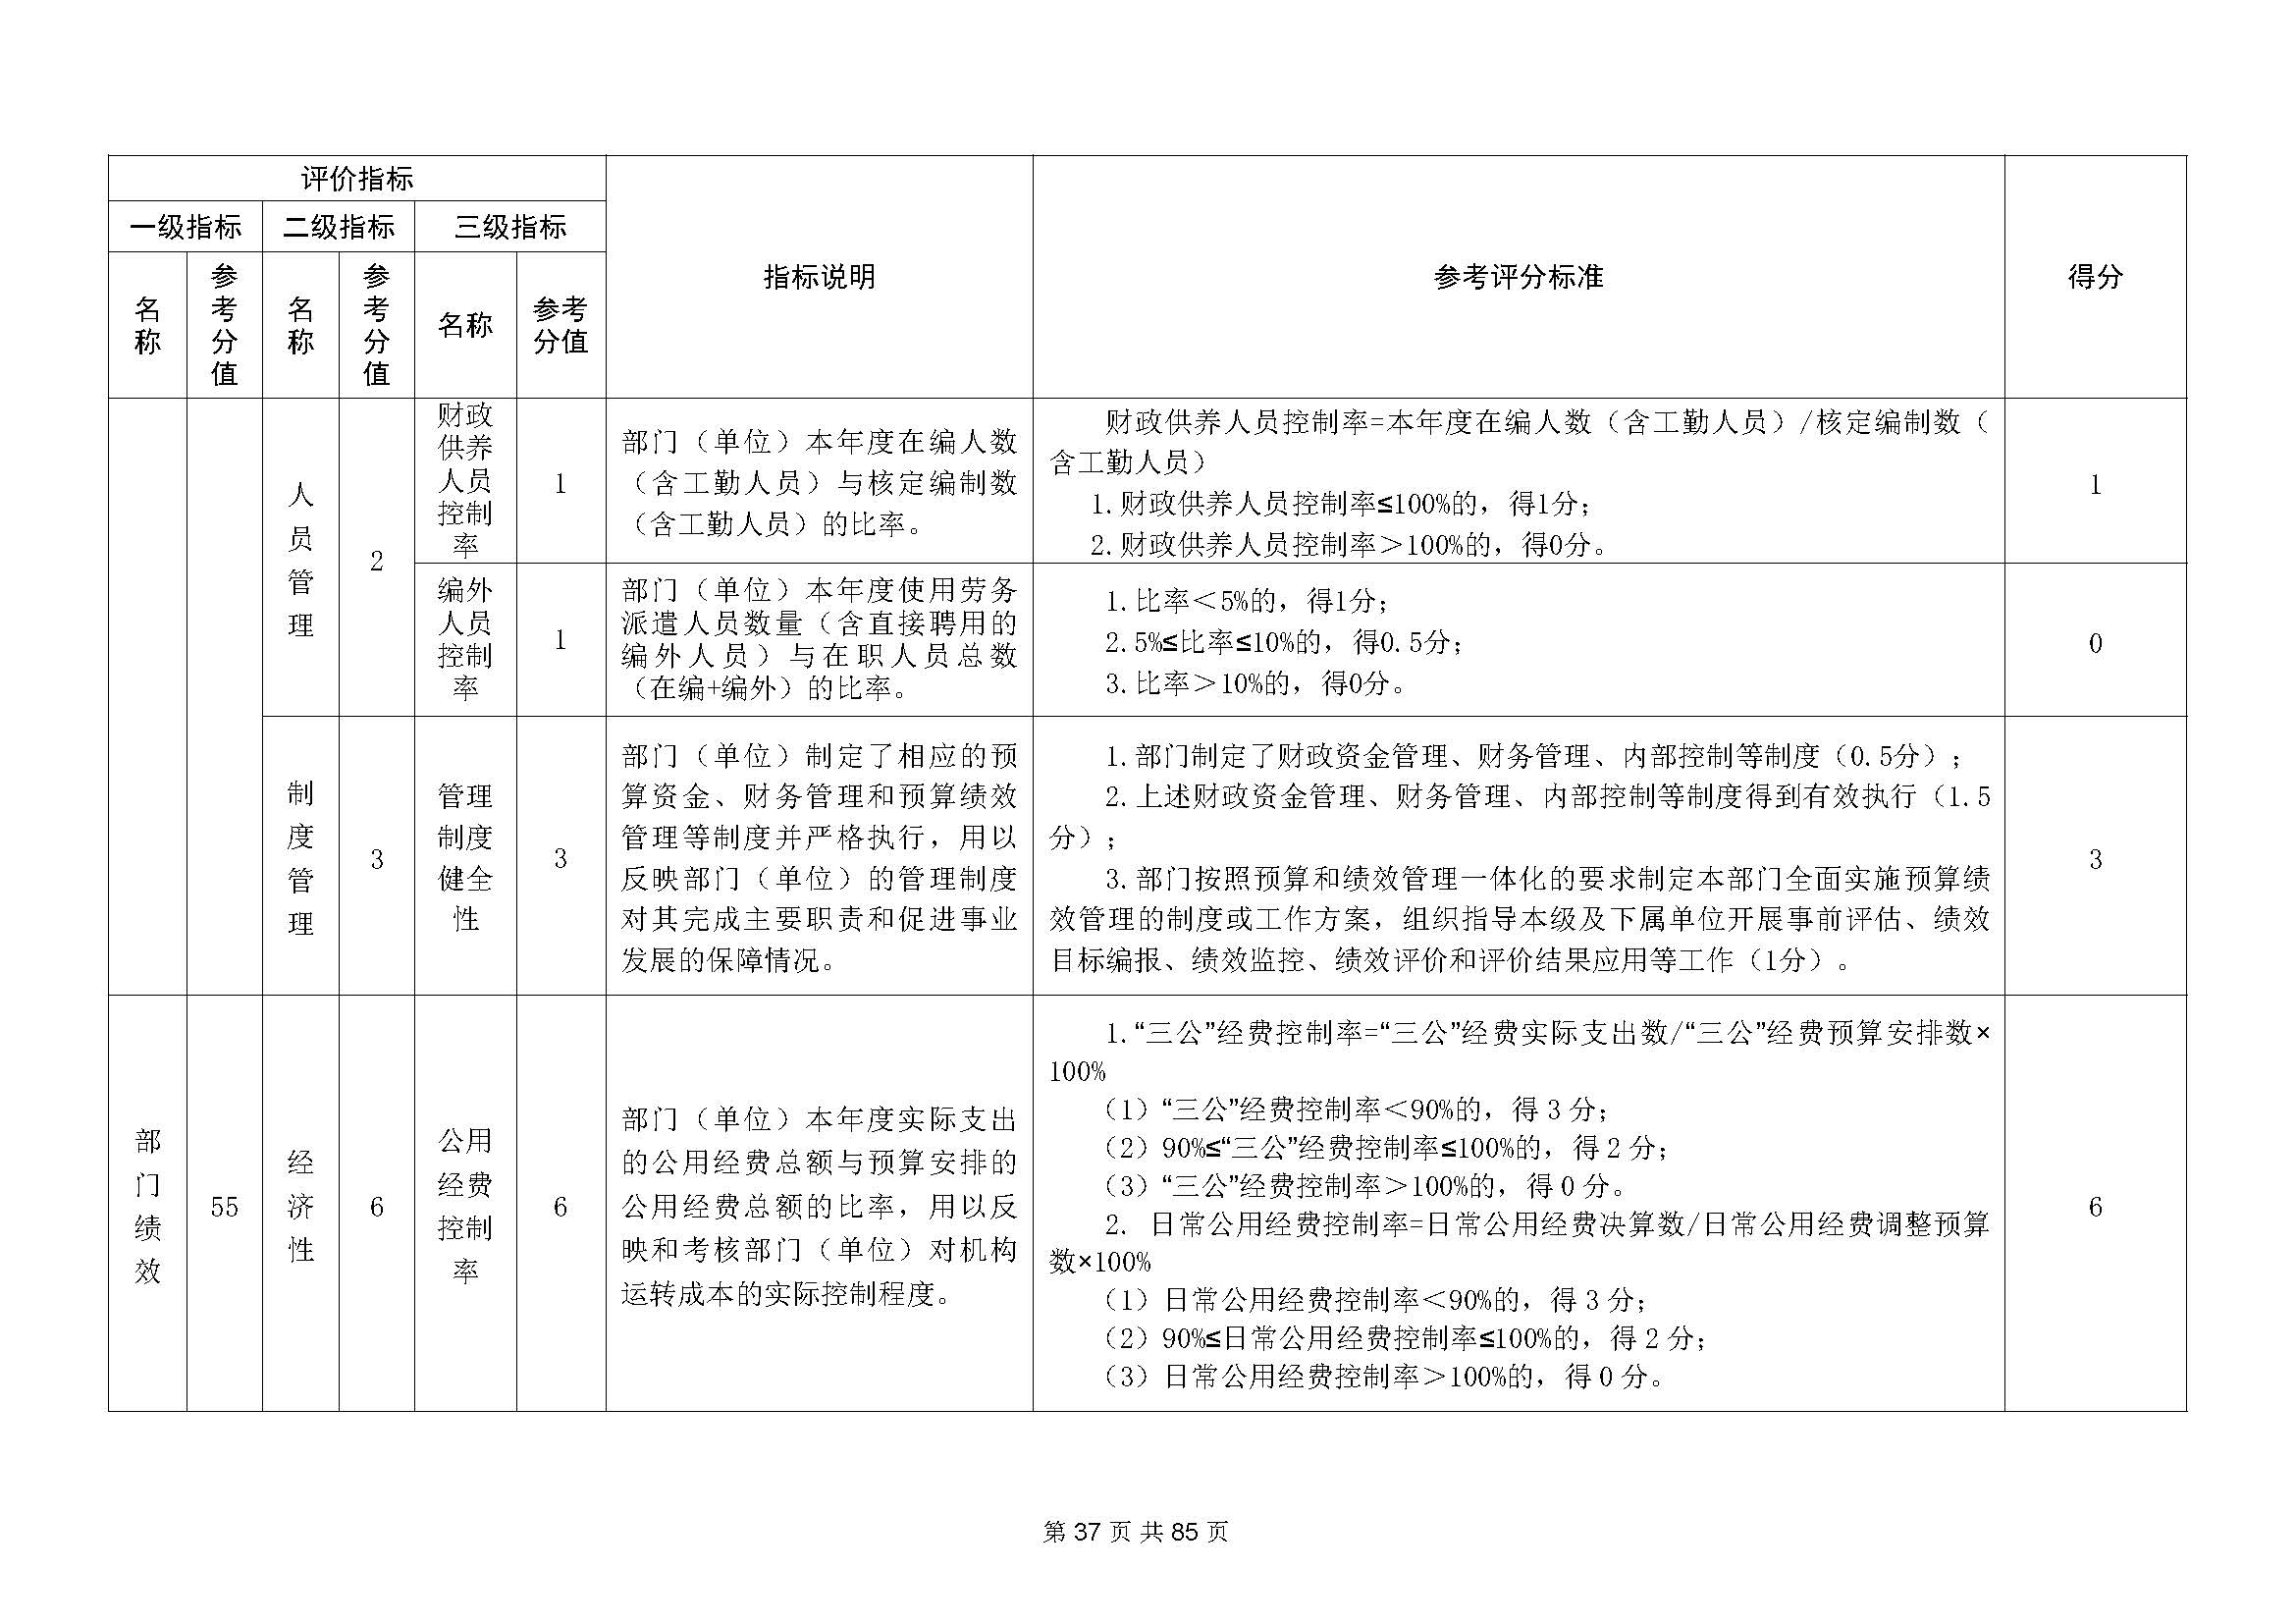 深圳市招生考试办公室2020年度部门决算_页面_38.jpg